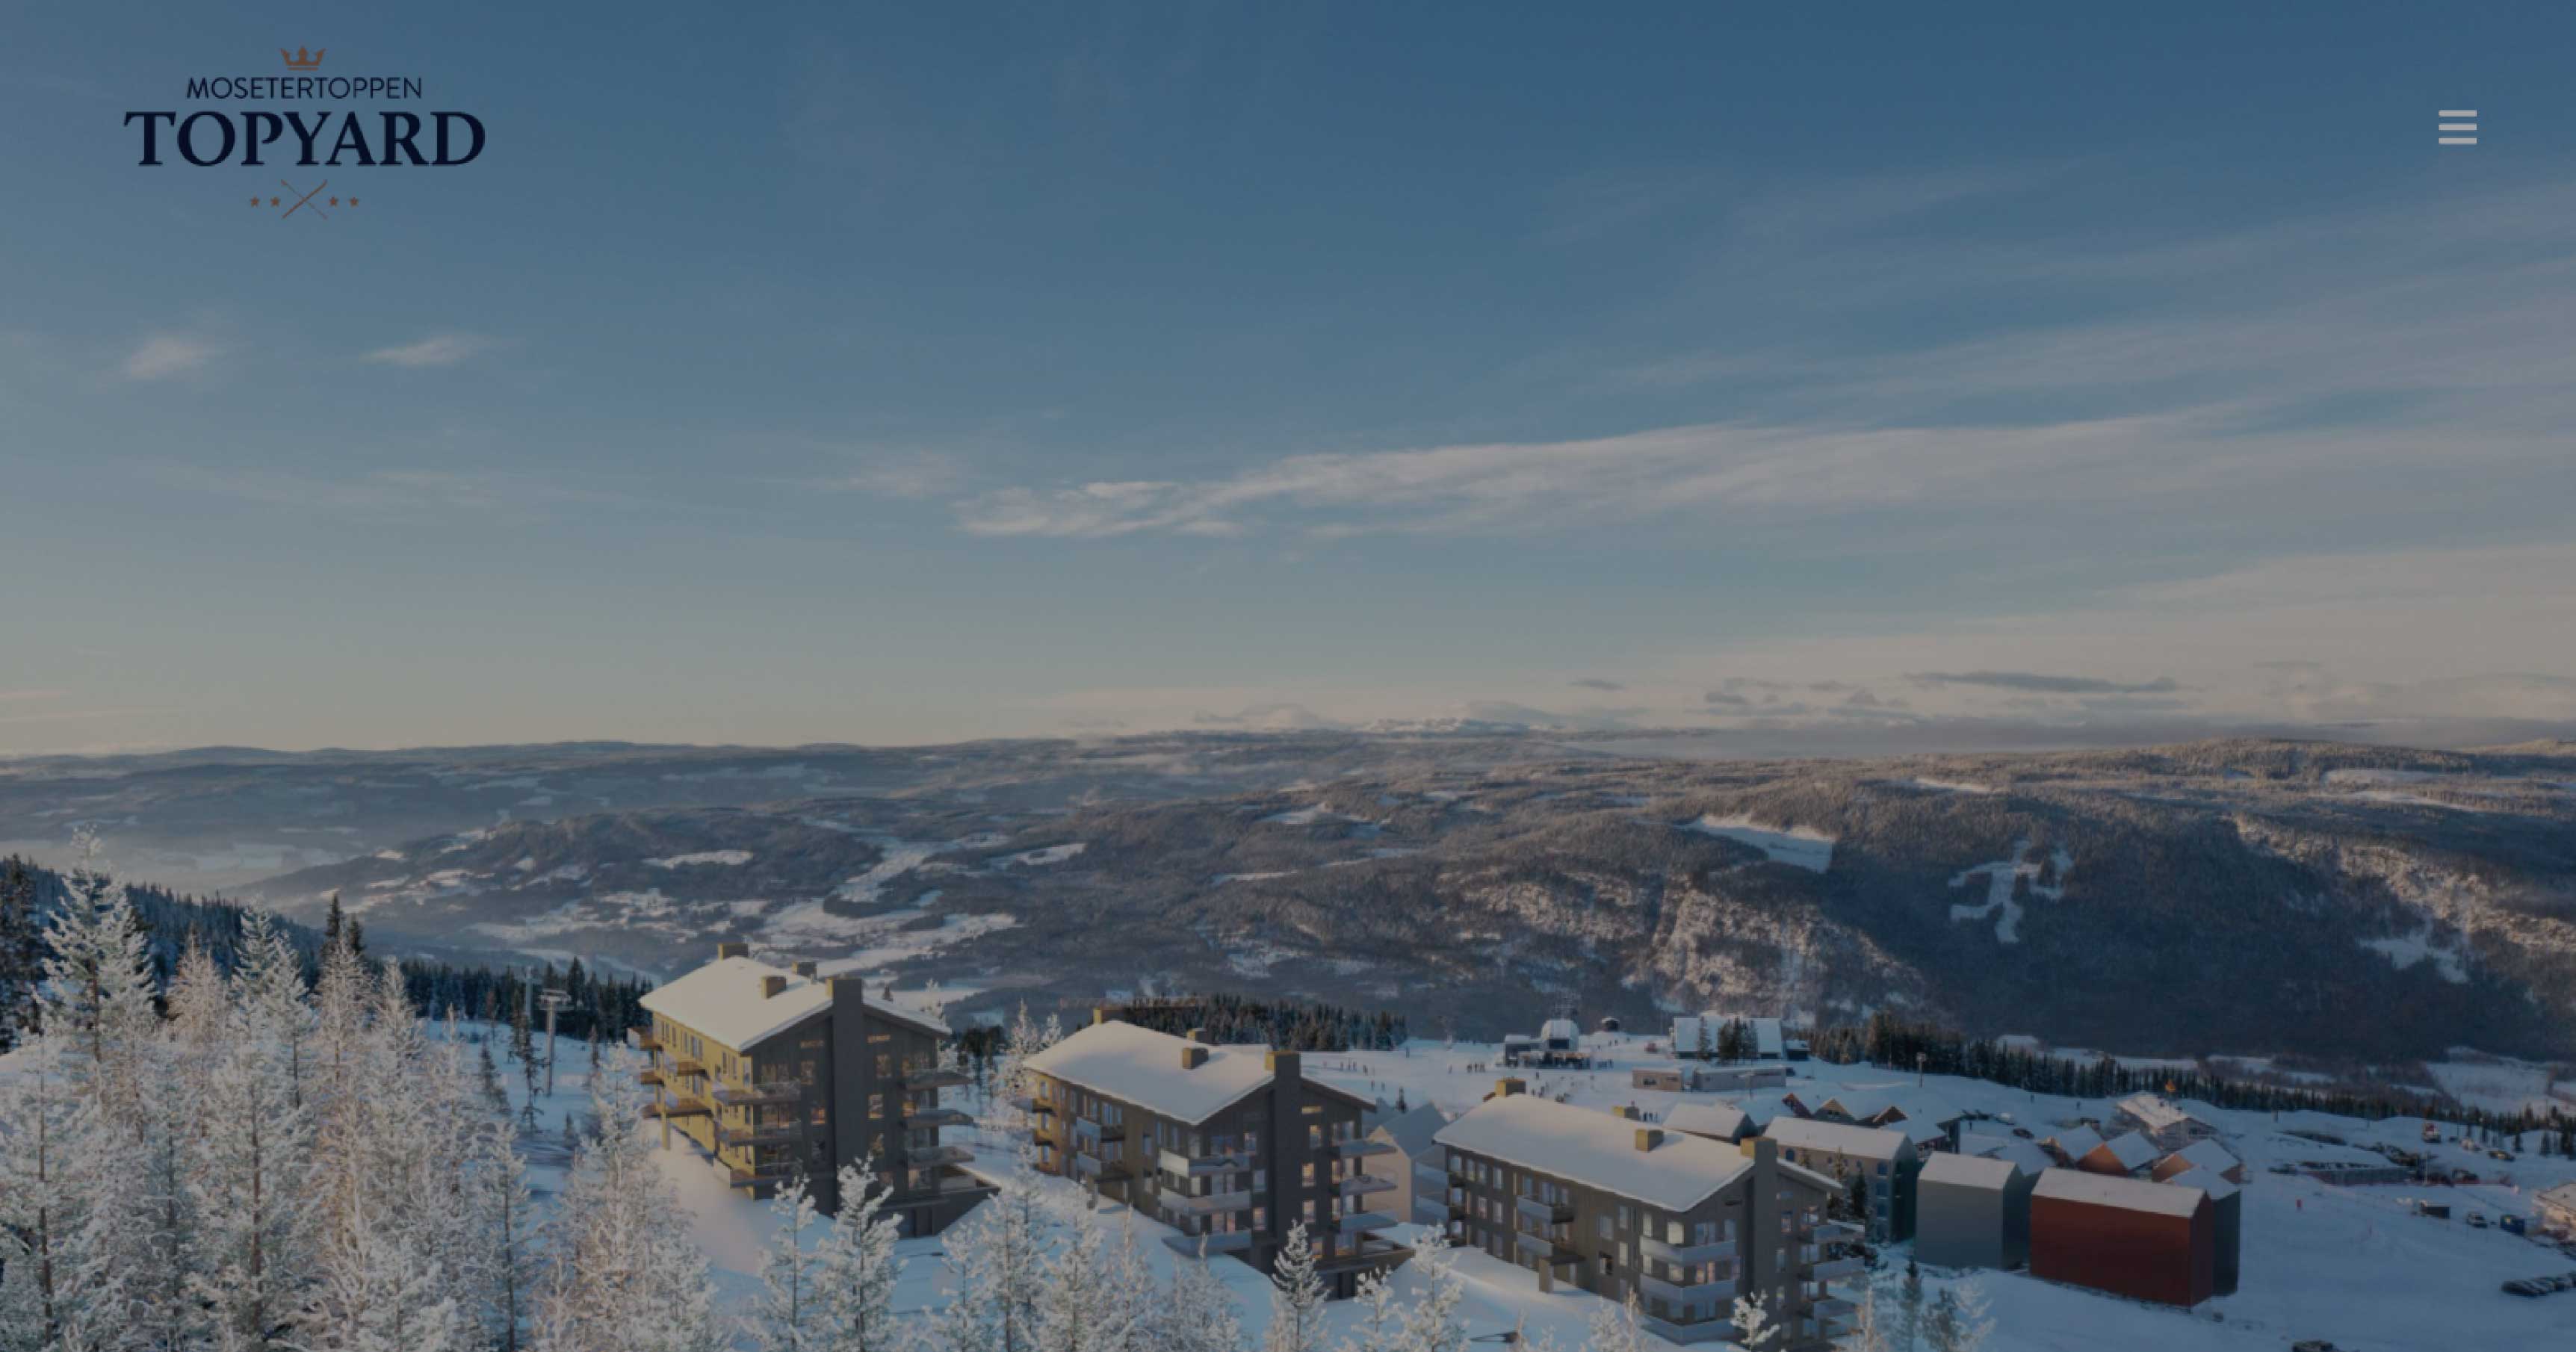 Skjermdump av nettside for Mosetertoppen Topyard, leiligheter på fjellet, vinterlandskap, blå himmel